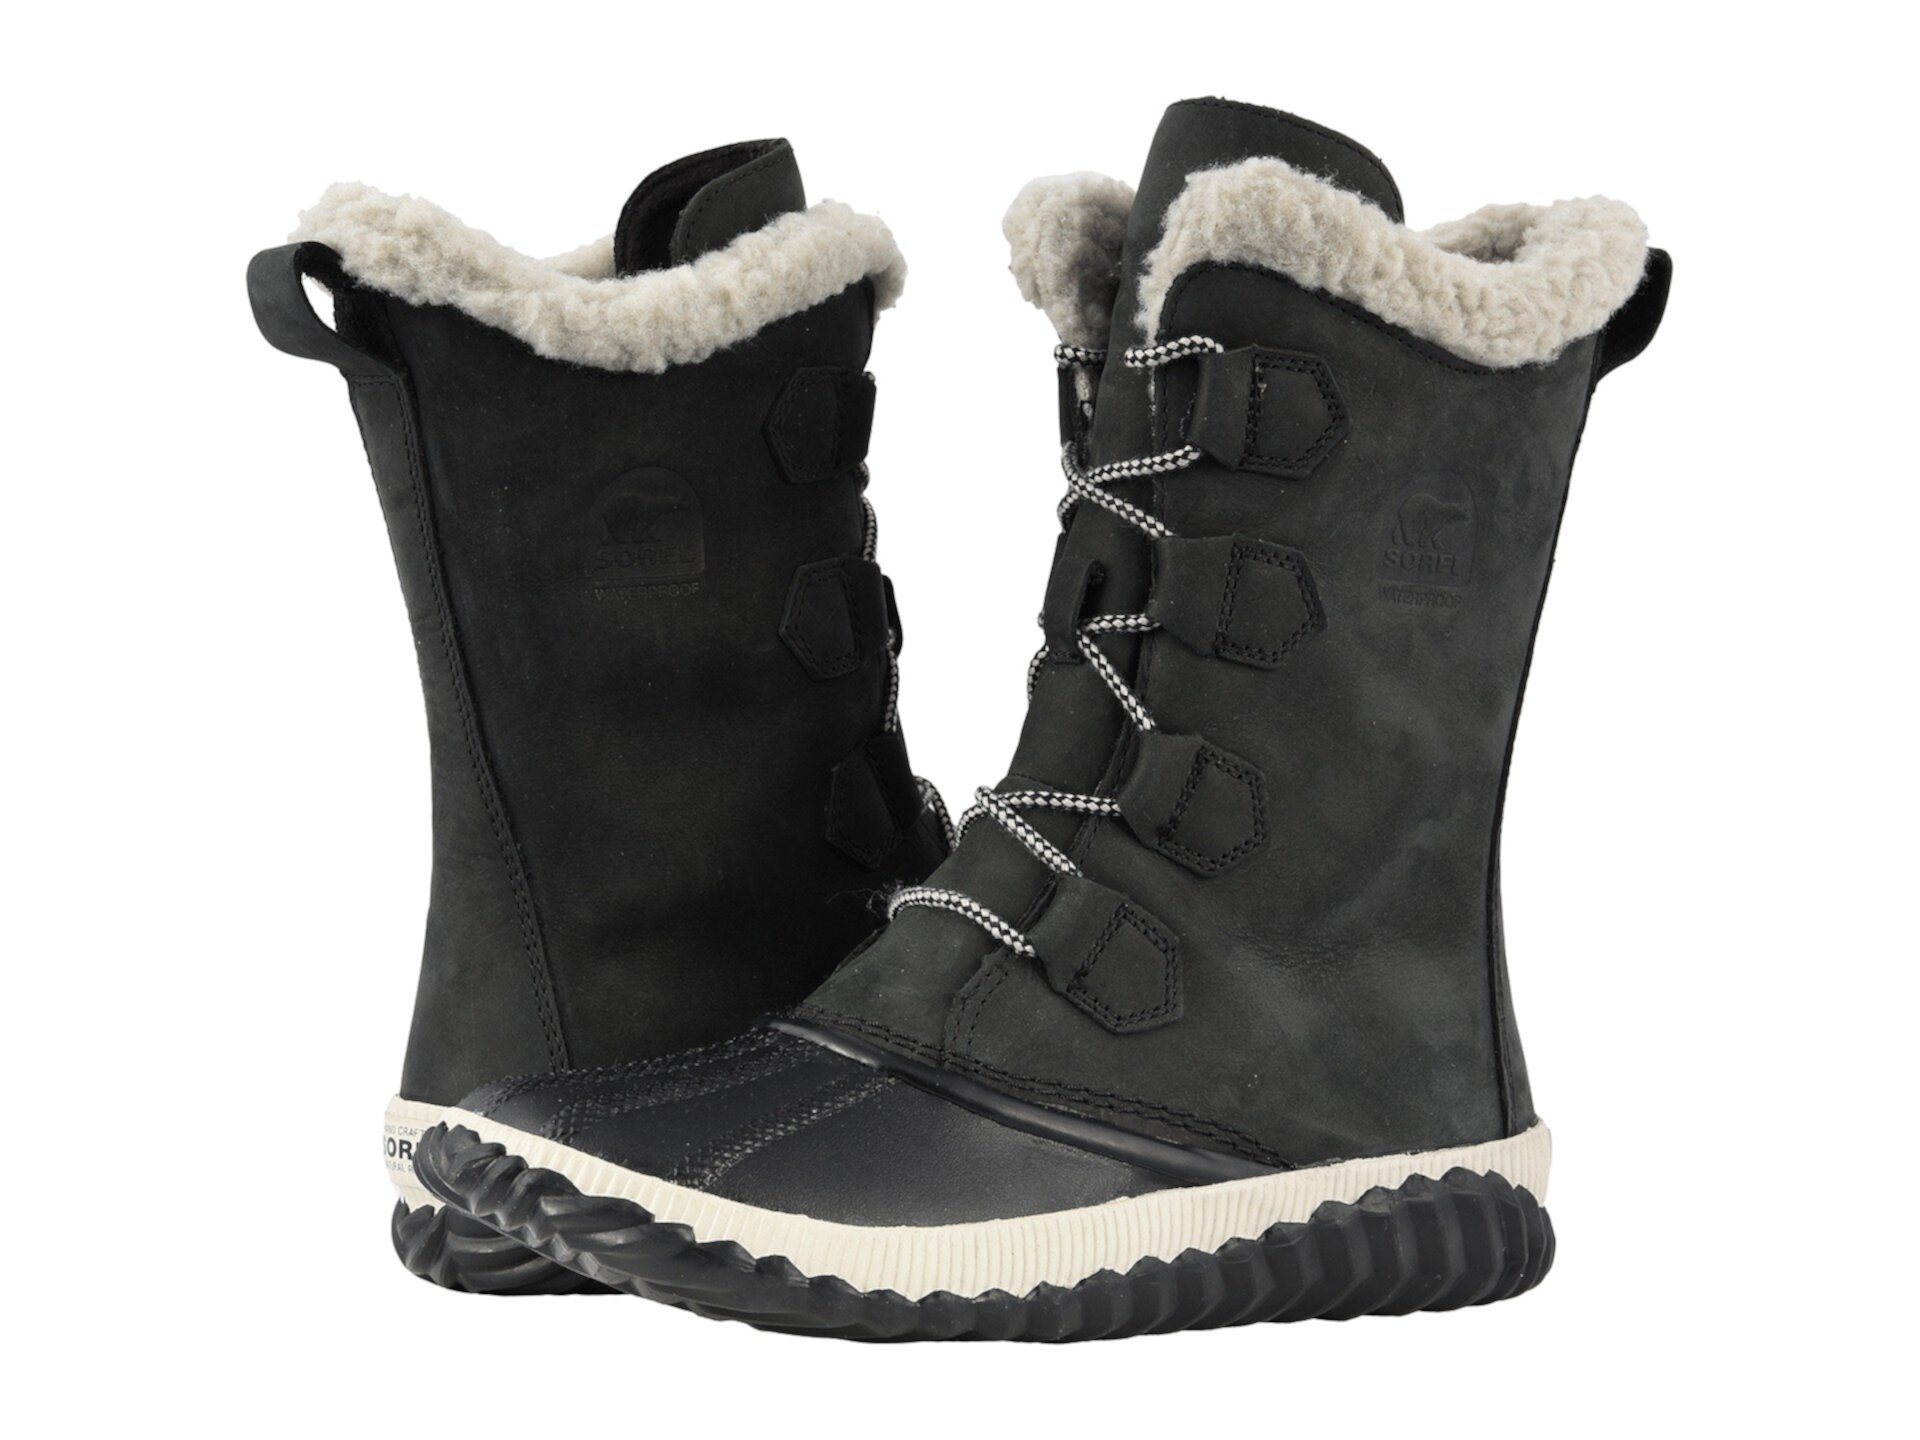 Boot out. Sorel Sorel Explorer™ высокие черные. Sorel cozy 1964. Сорель одежда. Sorel обувь женская зимняя купить.